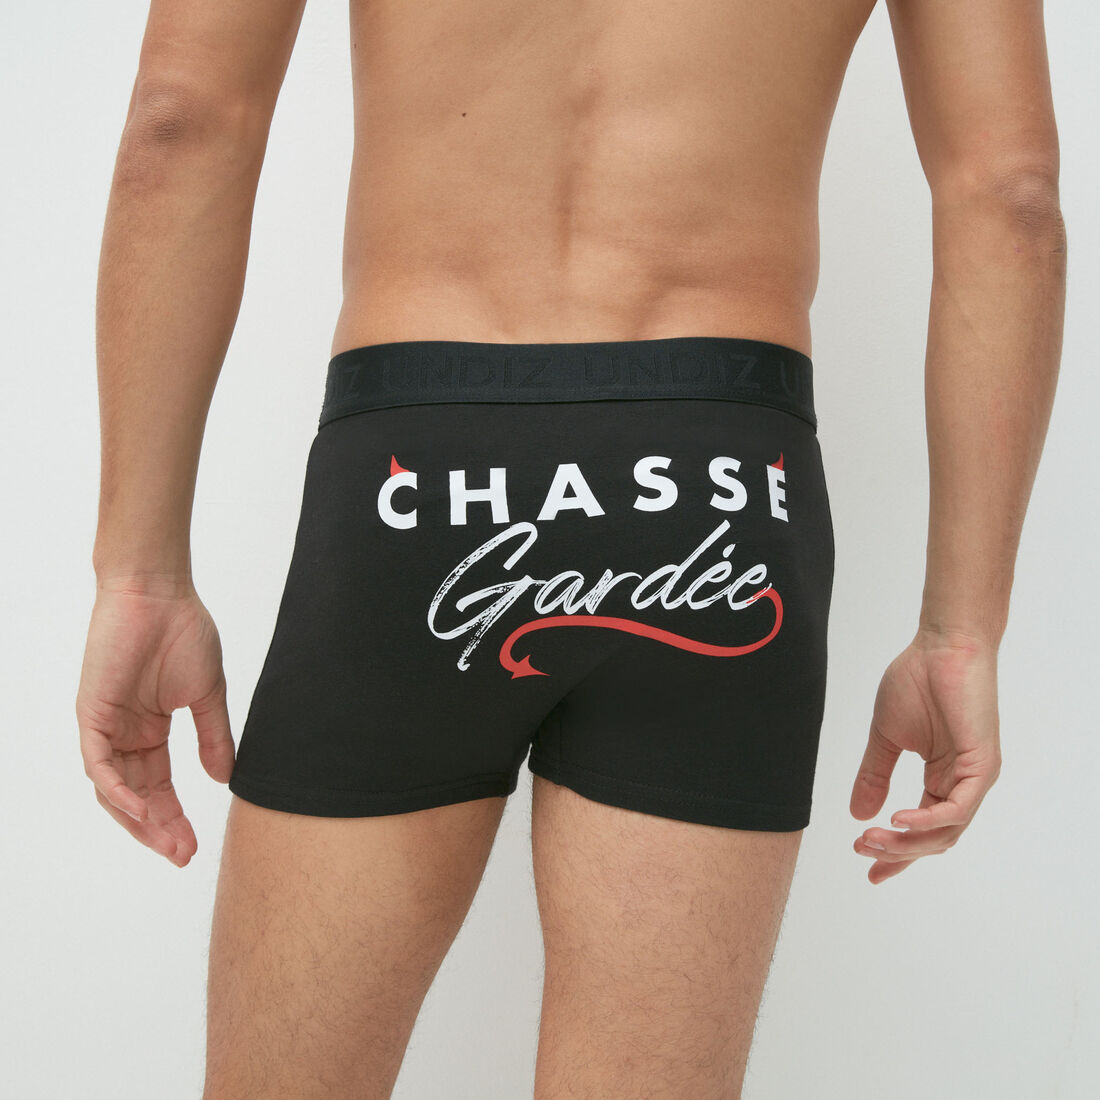 "Chasse gardÃ©e" slogan boxers;